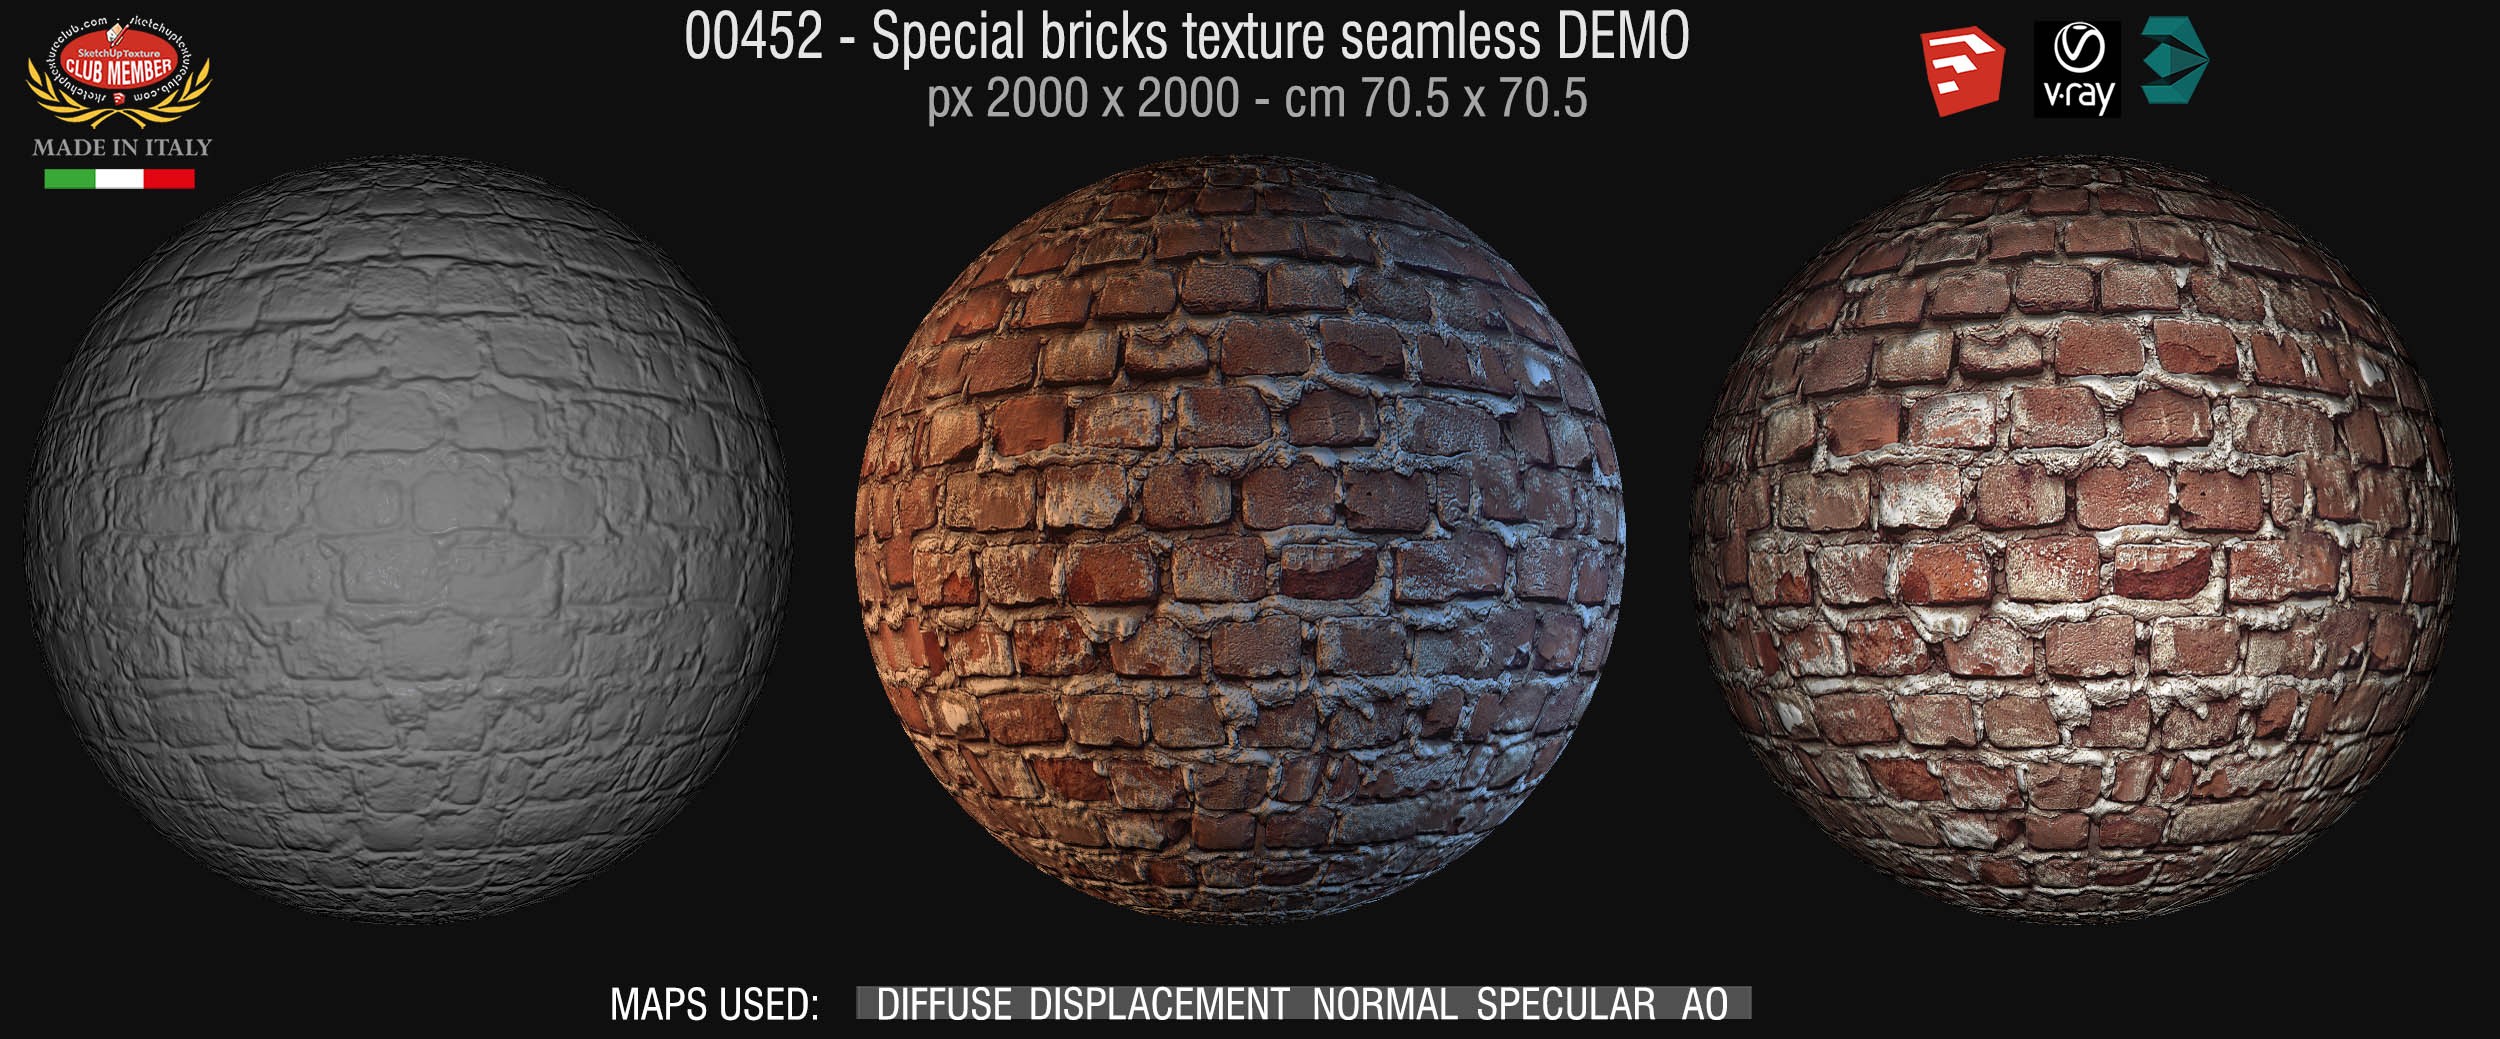 00452 Special bricks texture seamless + maps DEMO